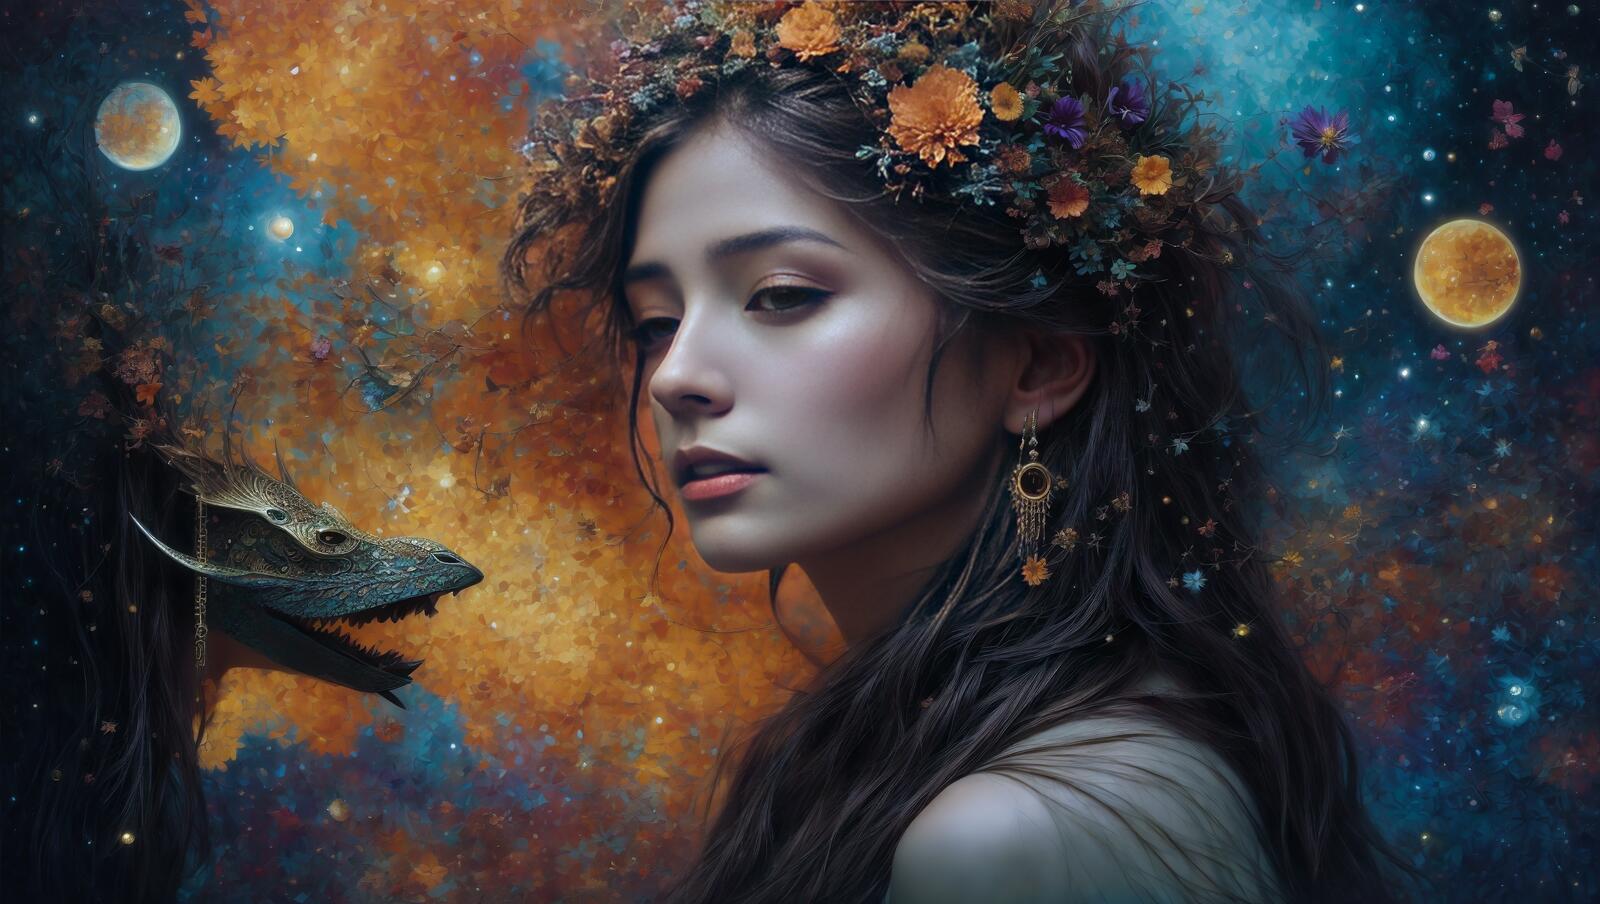 Бесплатное фото Девушка с цветочной короной на голове смотрит на животное на картине